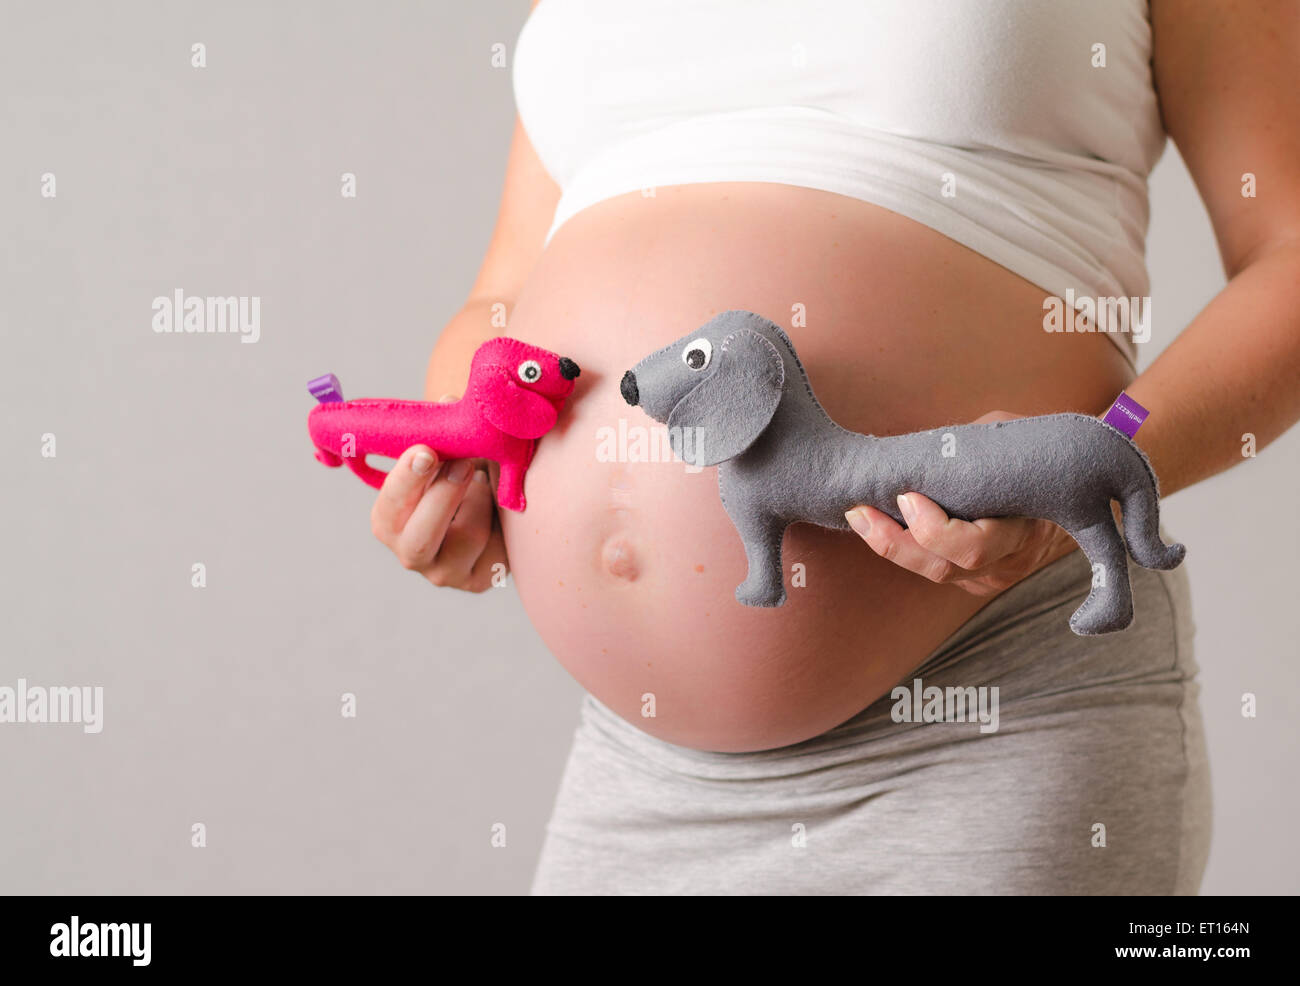 Maternité femme enceinte photo de son ventre avec un canard jumeaux adorable en peluche Banque D'Images